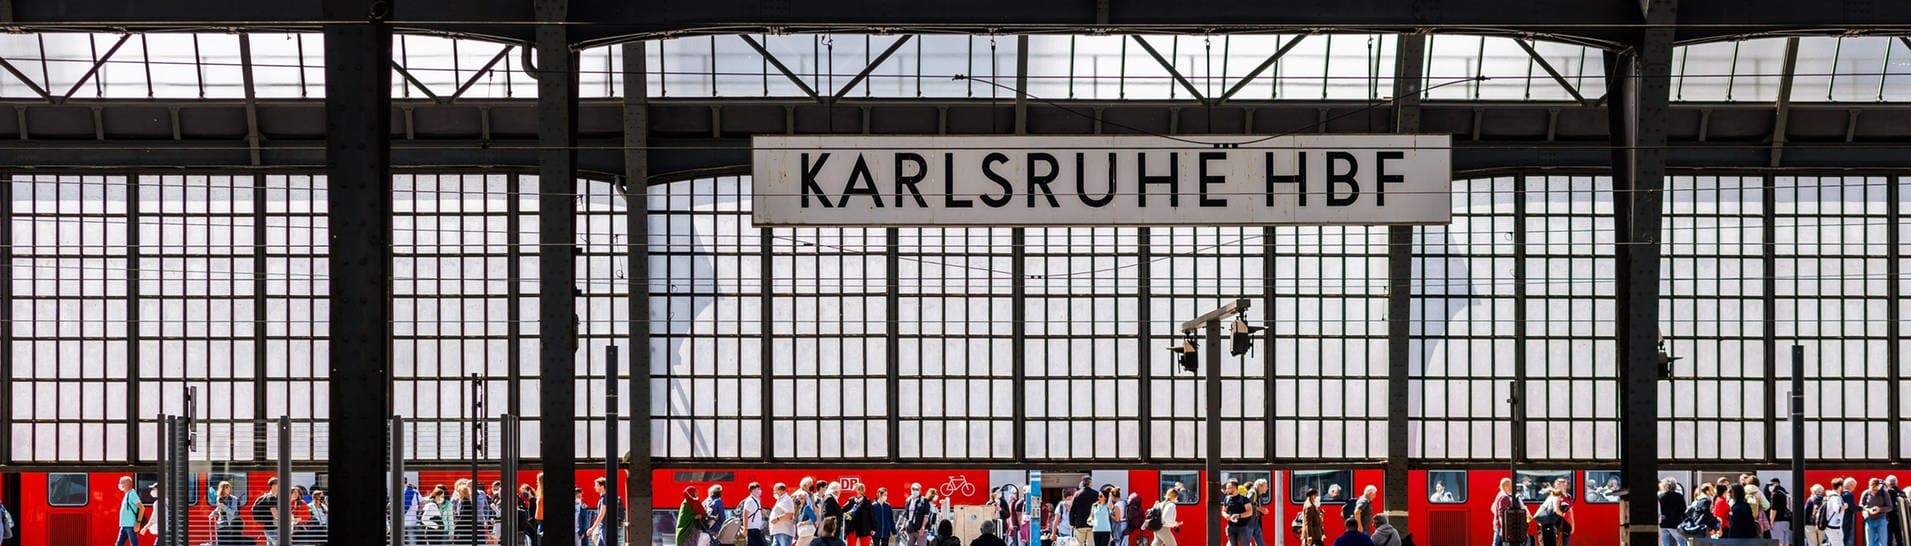 Stromschlag im Zug: Menschen gehen neben einem RE Regionalexpress der DB Deutschen Bahn im Karlsruher Hauptbahnhof über einen Bahnsteig während im Vordergrund Menschen auf einer Bank sitzen. (Foto: dpa Bildfunk, picture alliance/dpa | Philipp von Ditfurth)